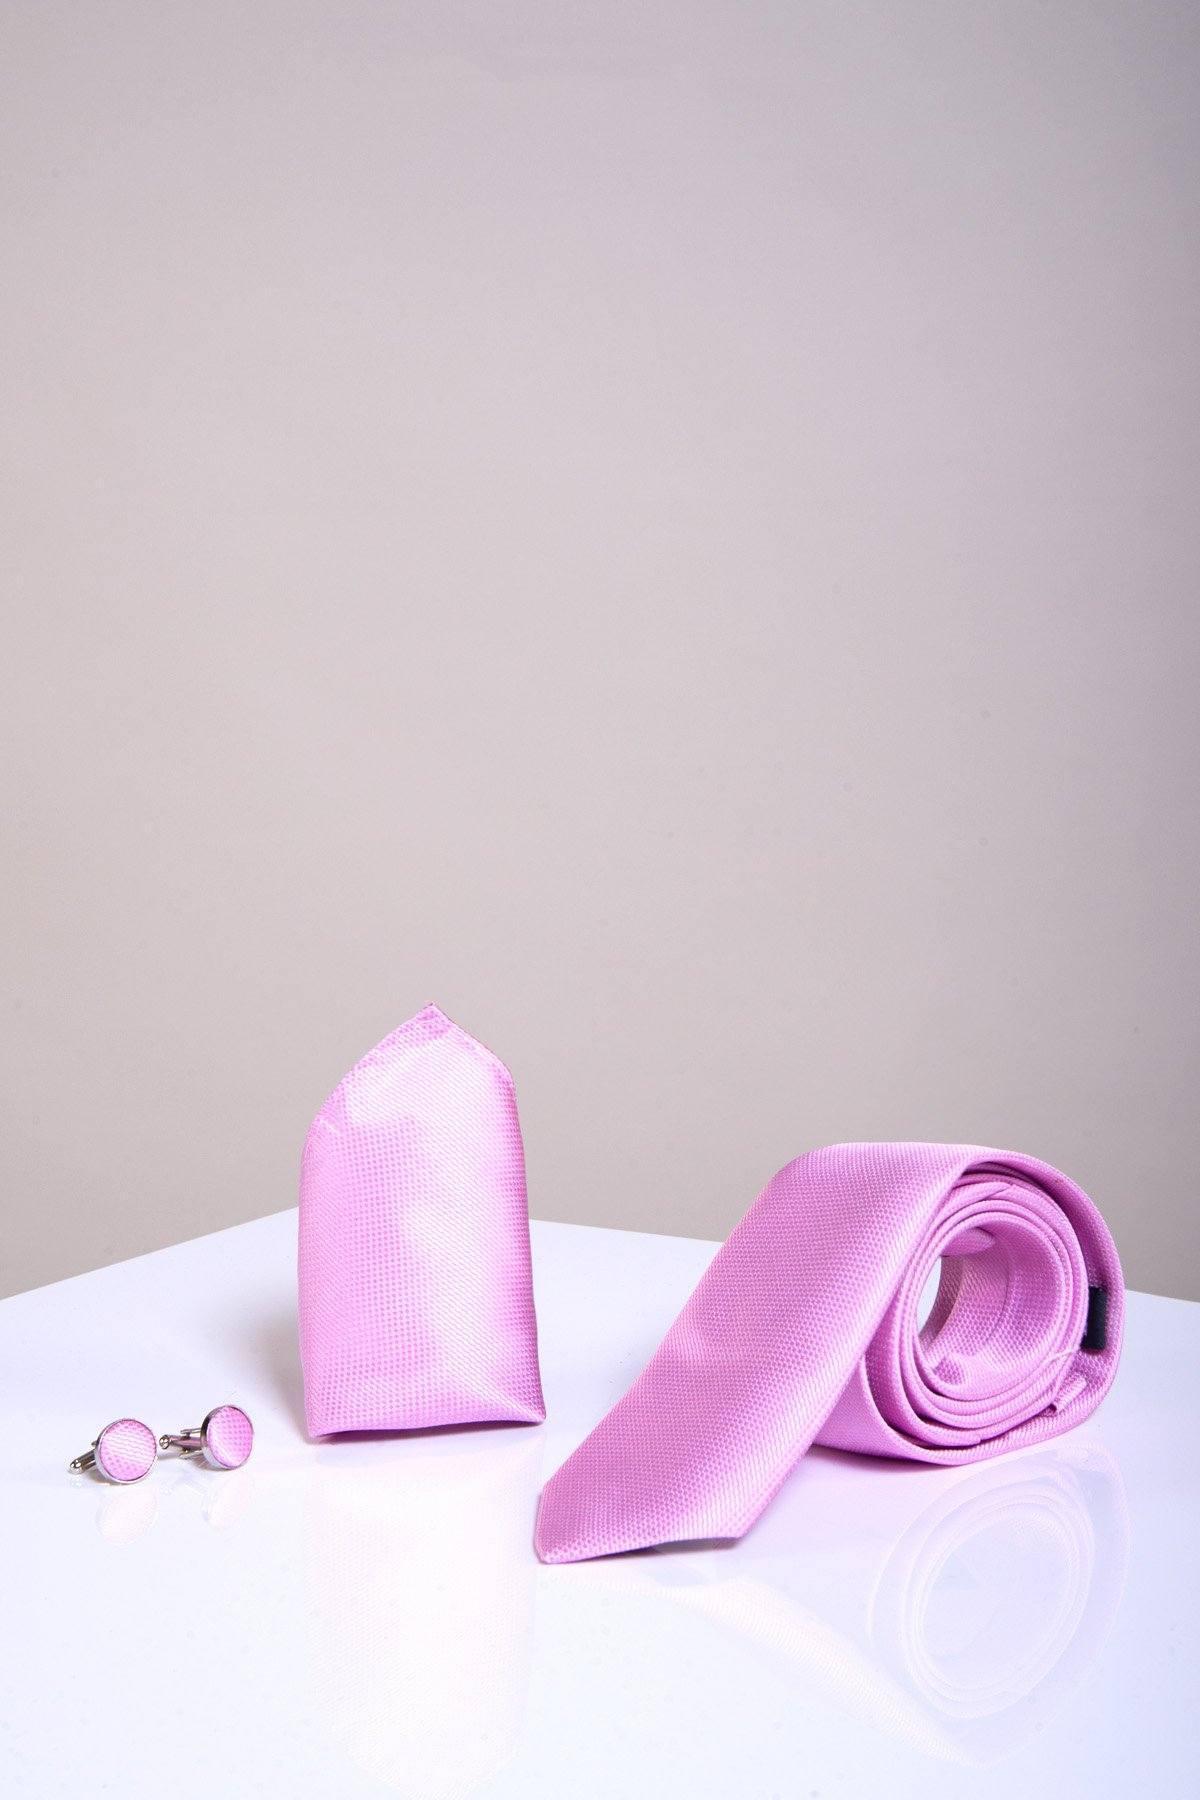 TB17 - Birdseye Tie, Cufflink & Pocket Square Set In Pink